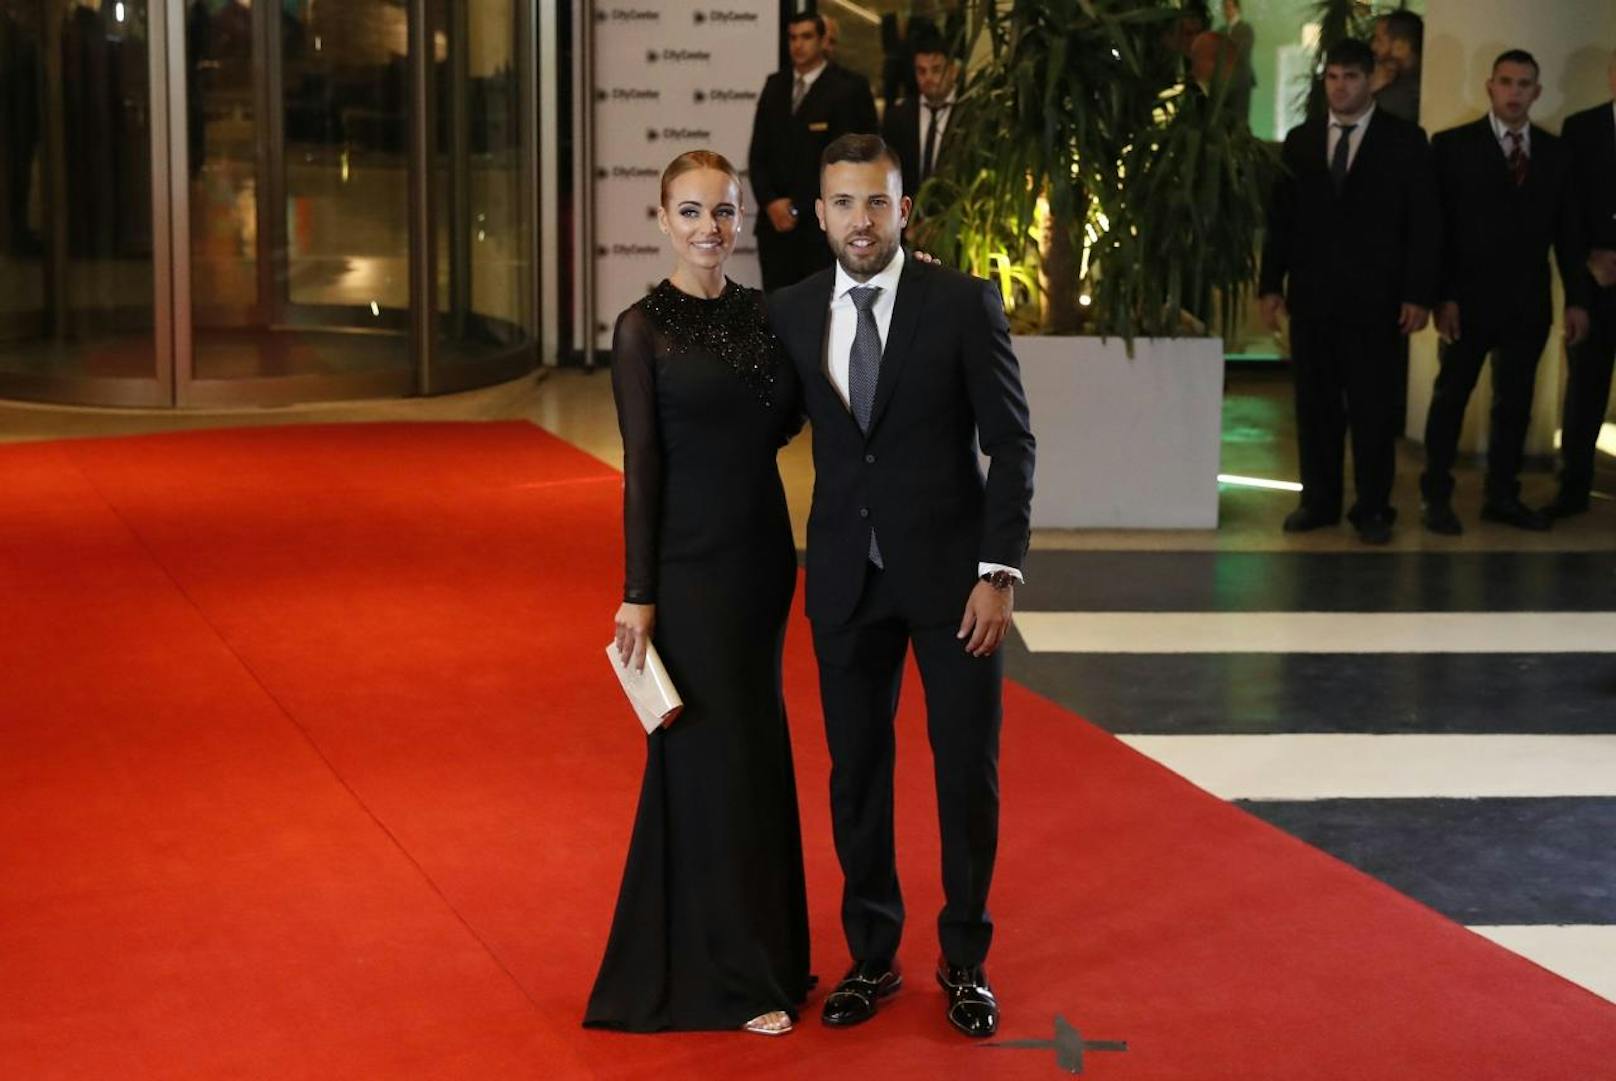 Jordi Albaund seine Freundin Romarey Ventura bei der Hochzeit von Lionel Messi